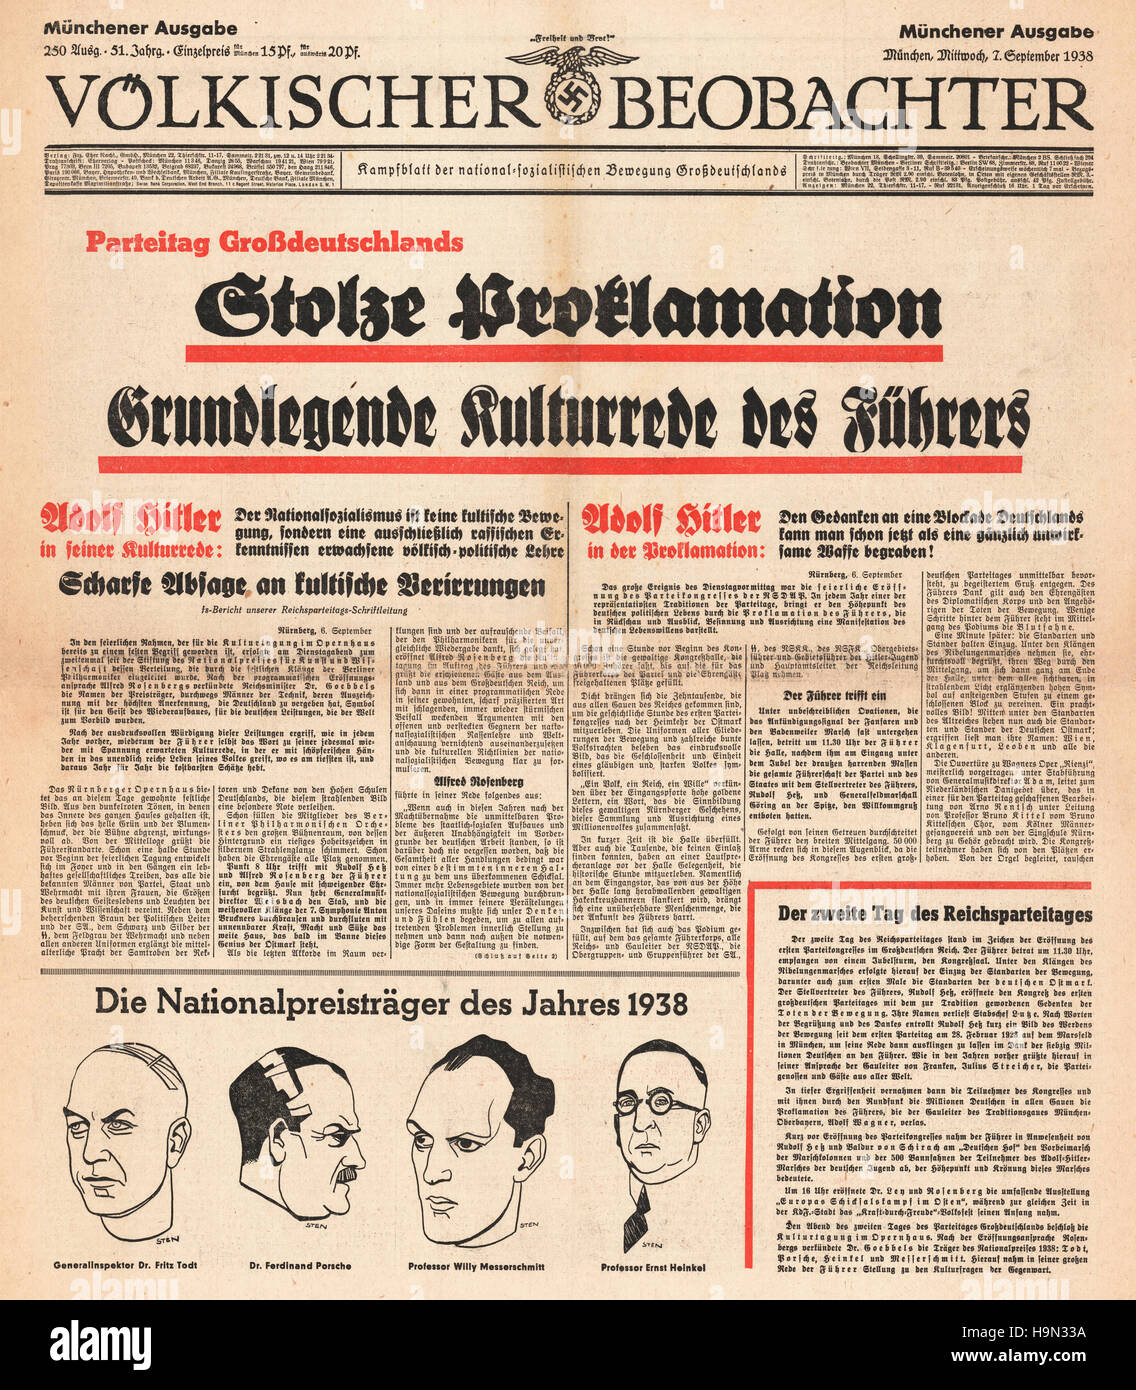 1938 Völkischer Beobachter front page Adolf Hitler speech in Nuremburg Stock Photo